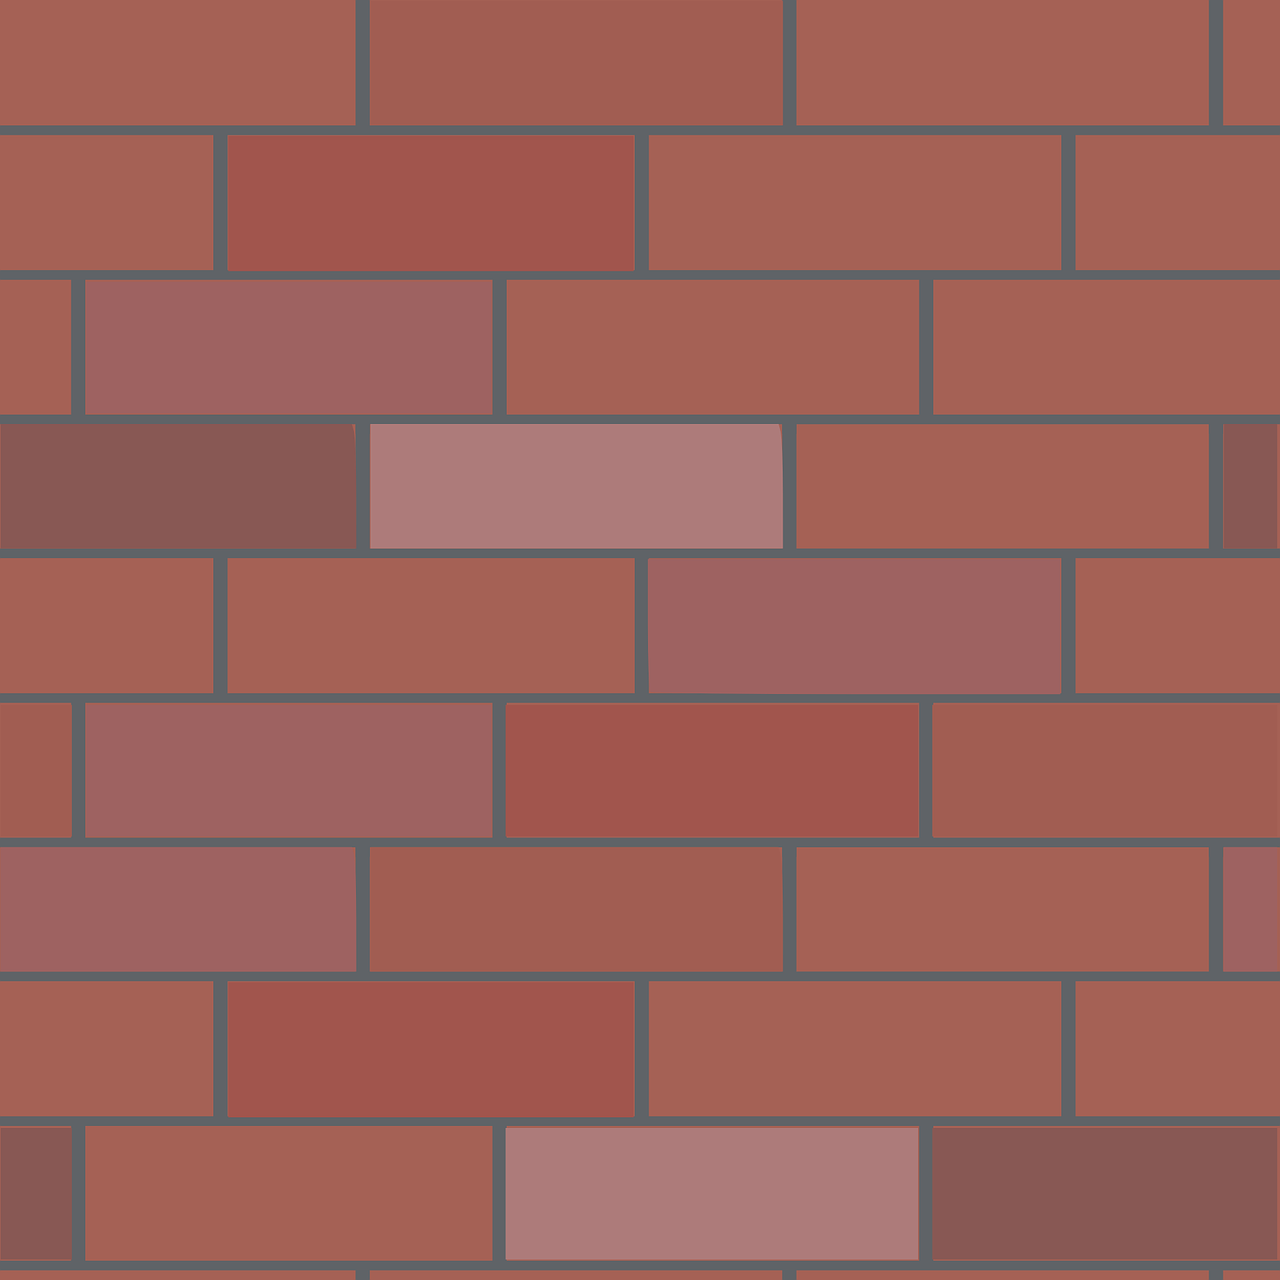 brick wall wall bricks free photo